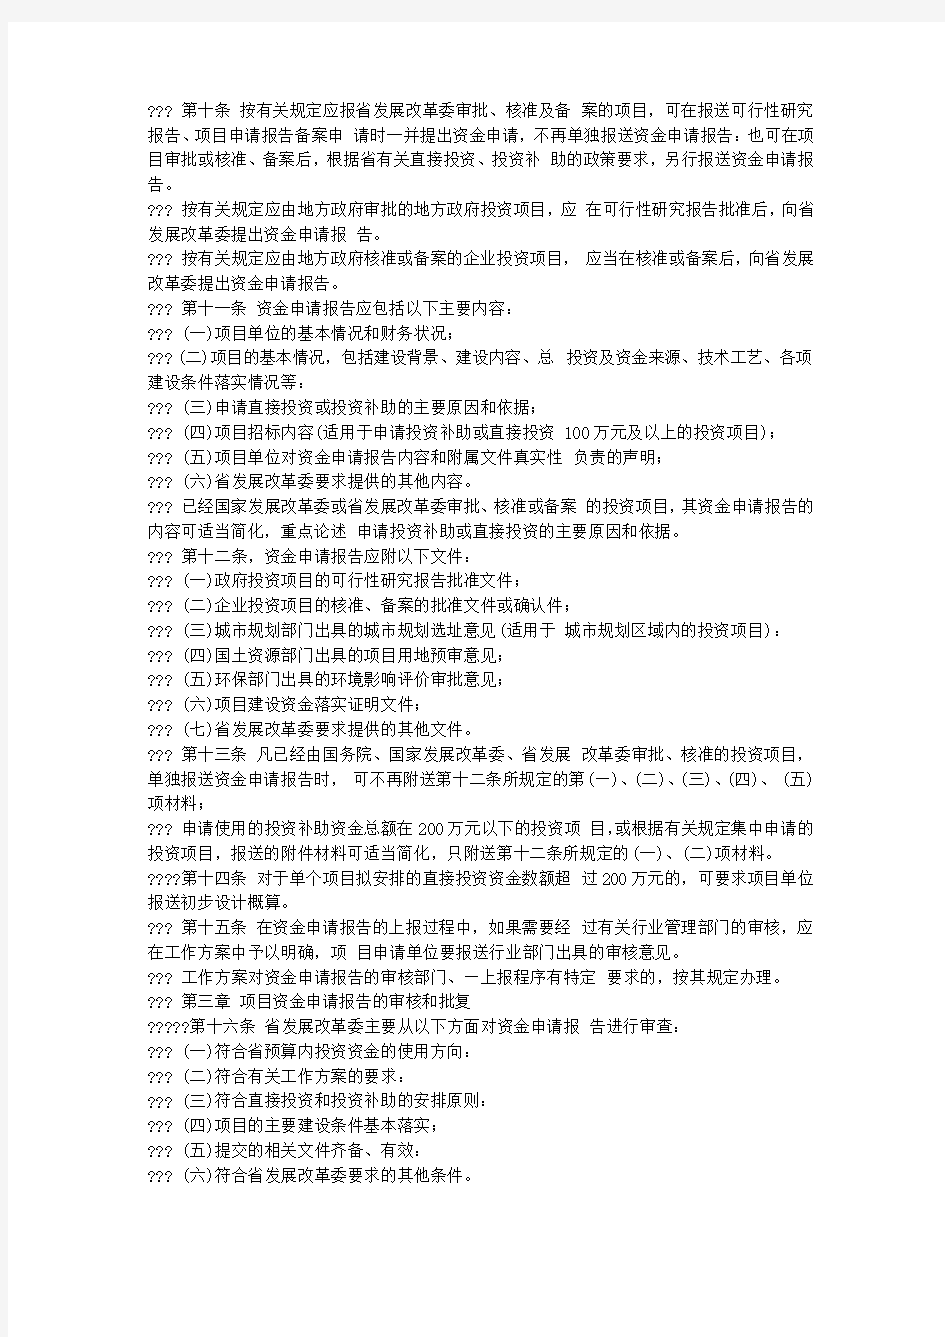 黑龙江省预算内投资项目管理暂行办法